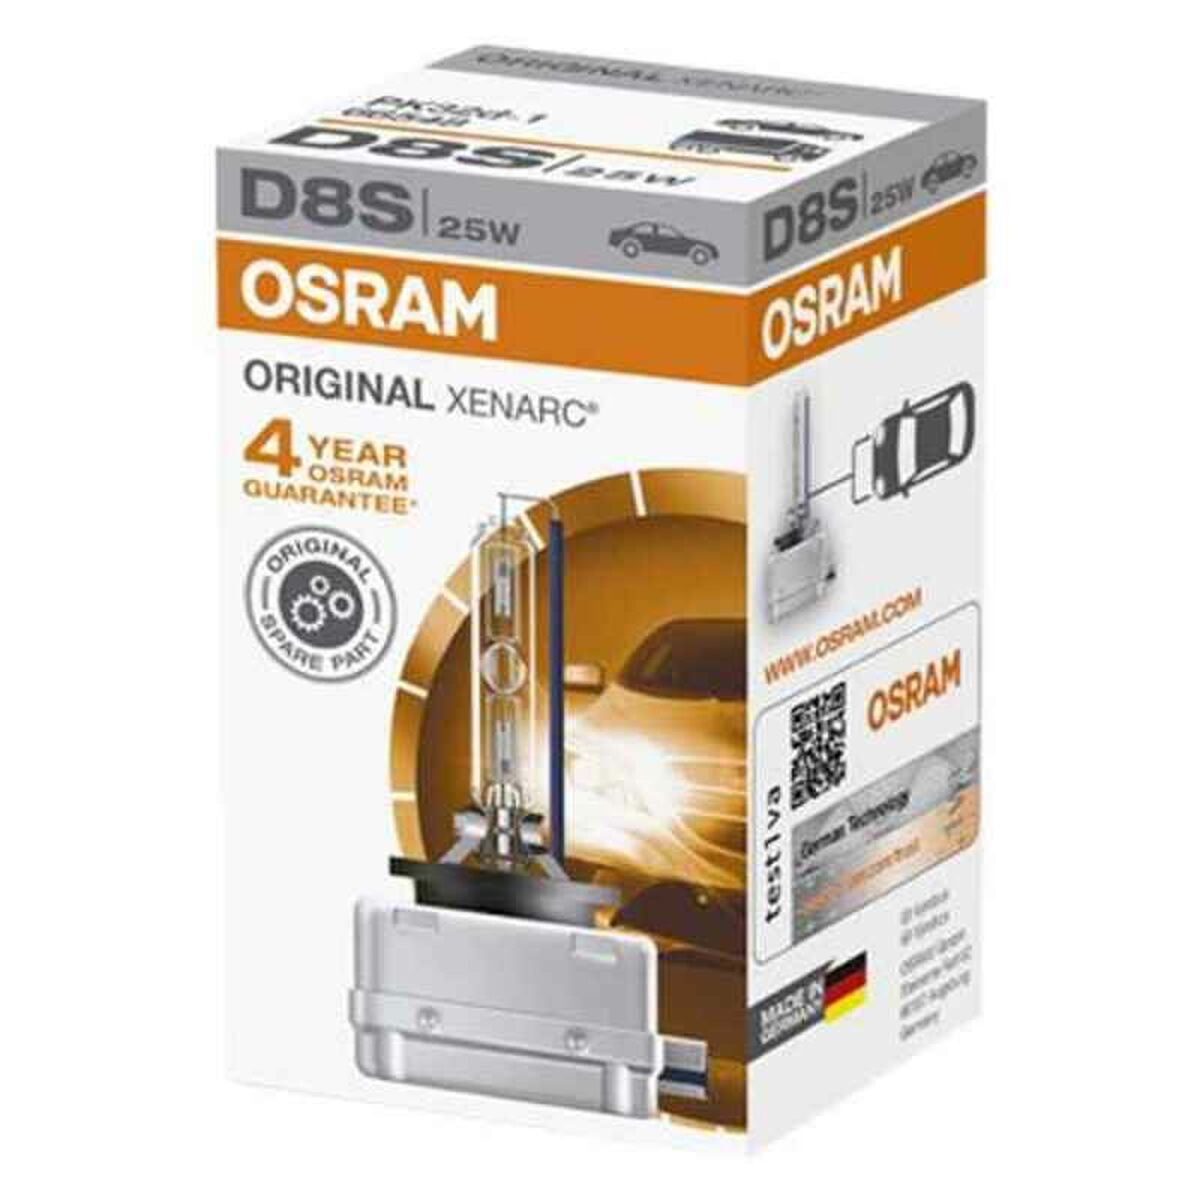 Автомобильная лампа OS66548 Osram OS66548 D8S 25W 40V